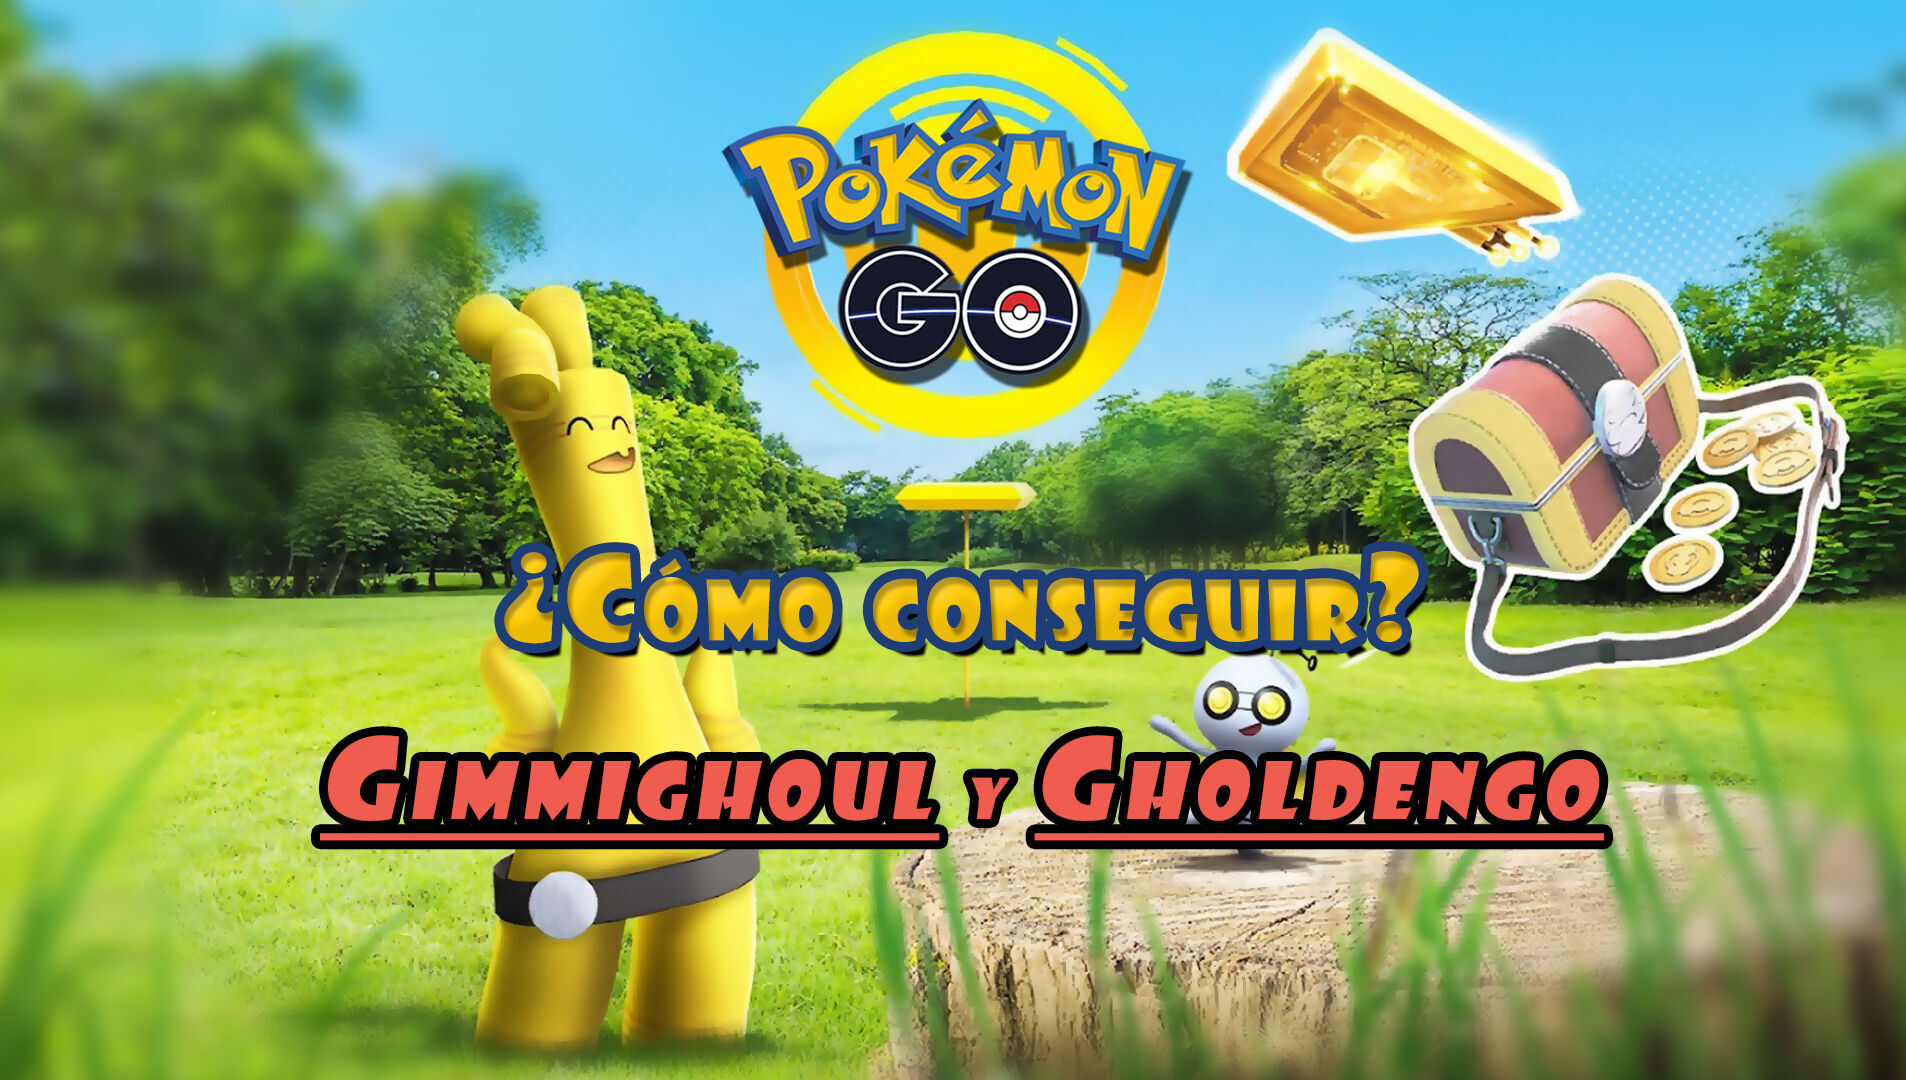 Pokémon GO: ¿Cómo conseguir a Gimmighoul y Gholdengo?